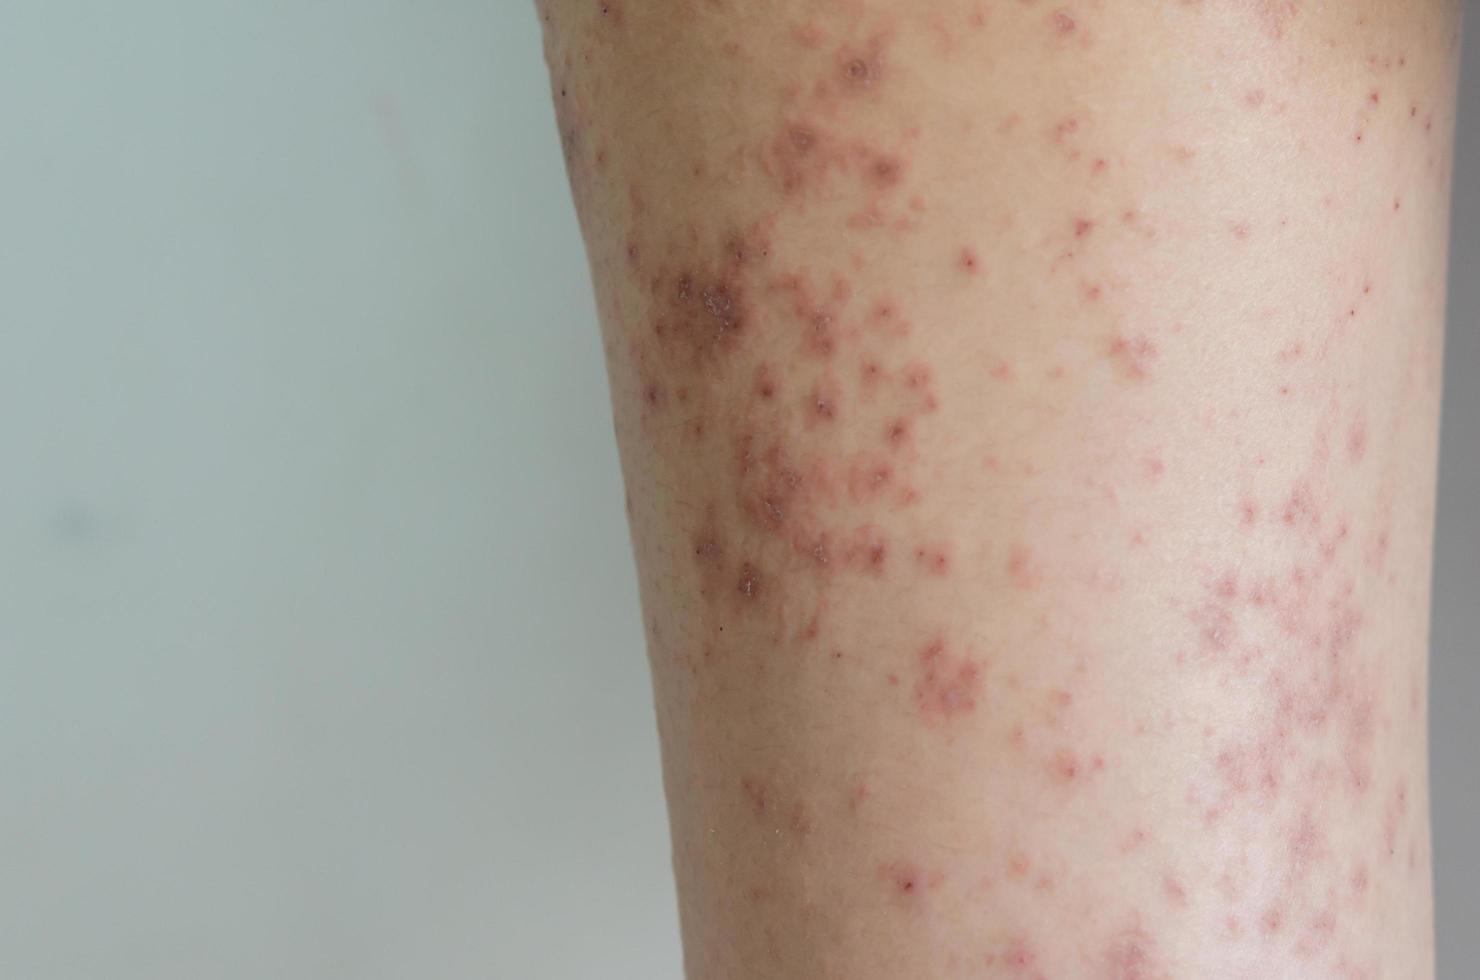 malattia della pelle della ragazza con eruzione cutanea rossa causata da allergie a farmaci, cibo, prodotti chimici, sistema immunitario povero nella linfa. foto